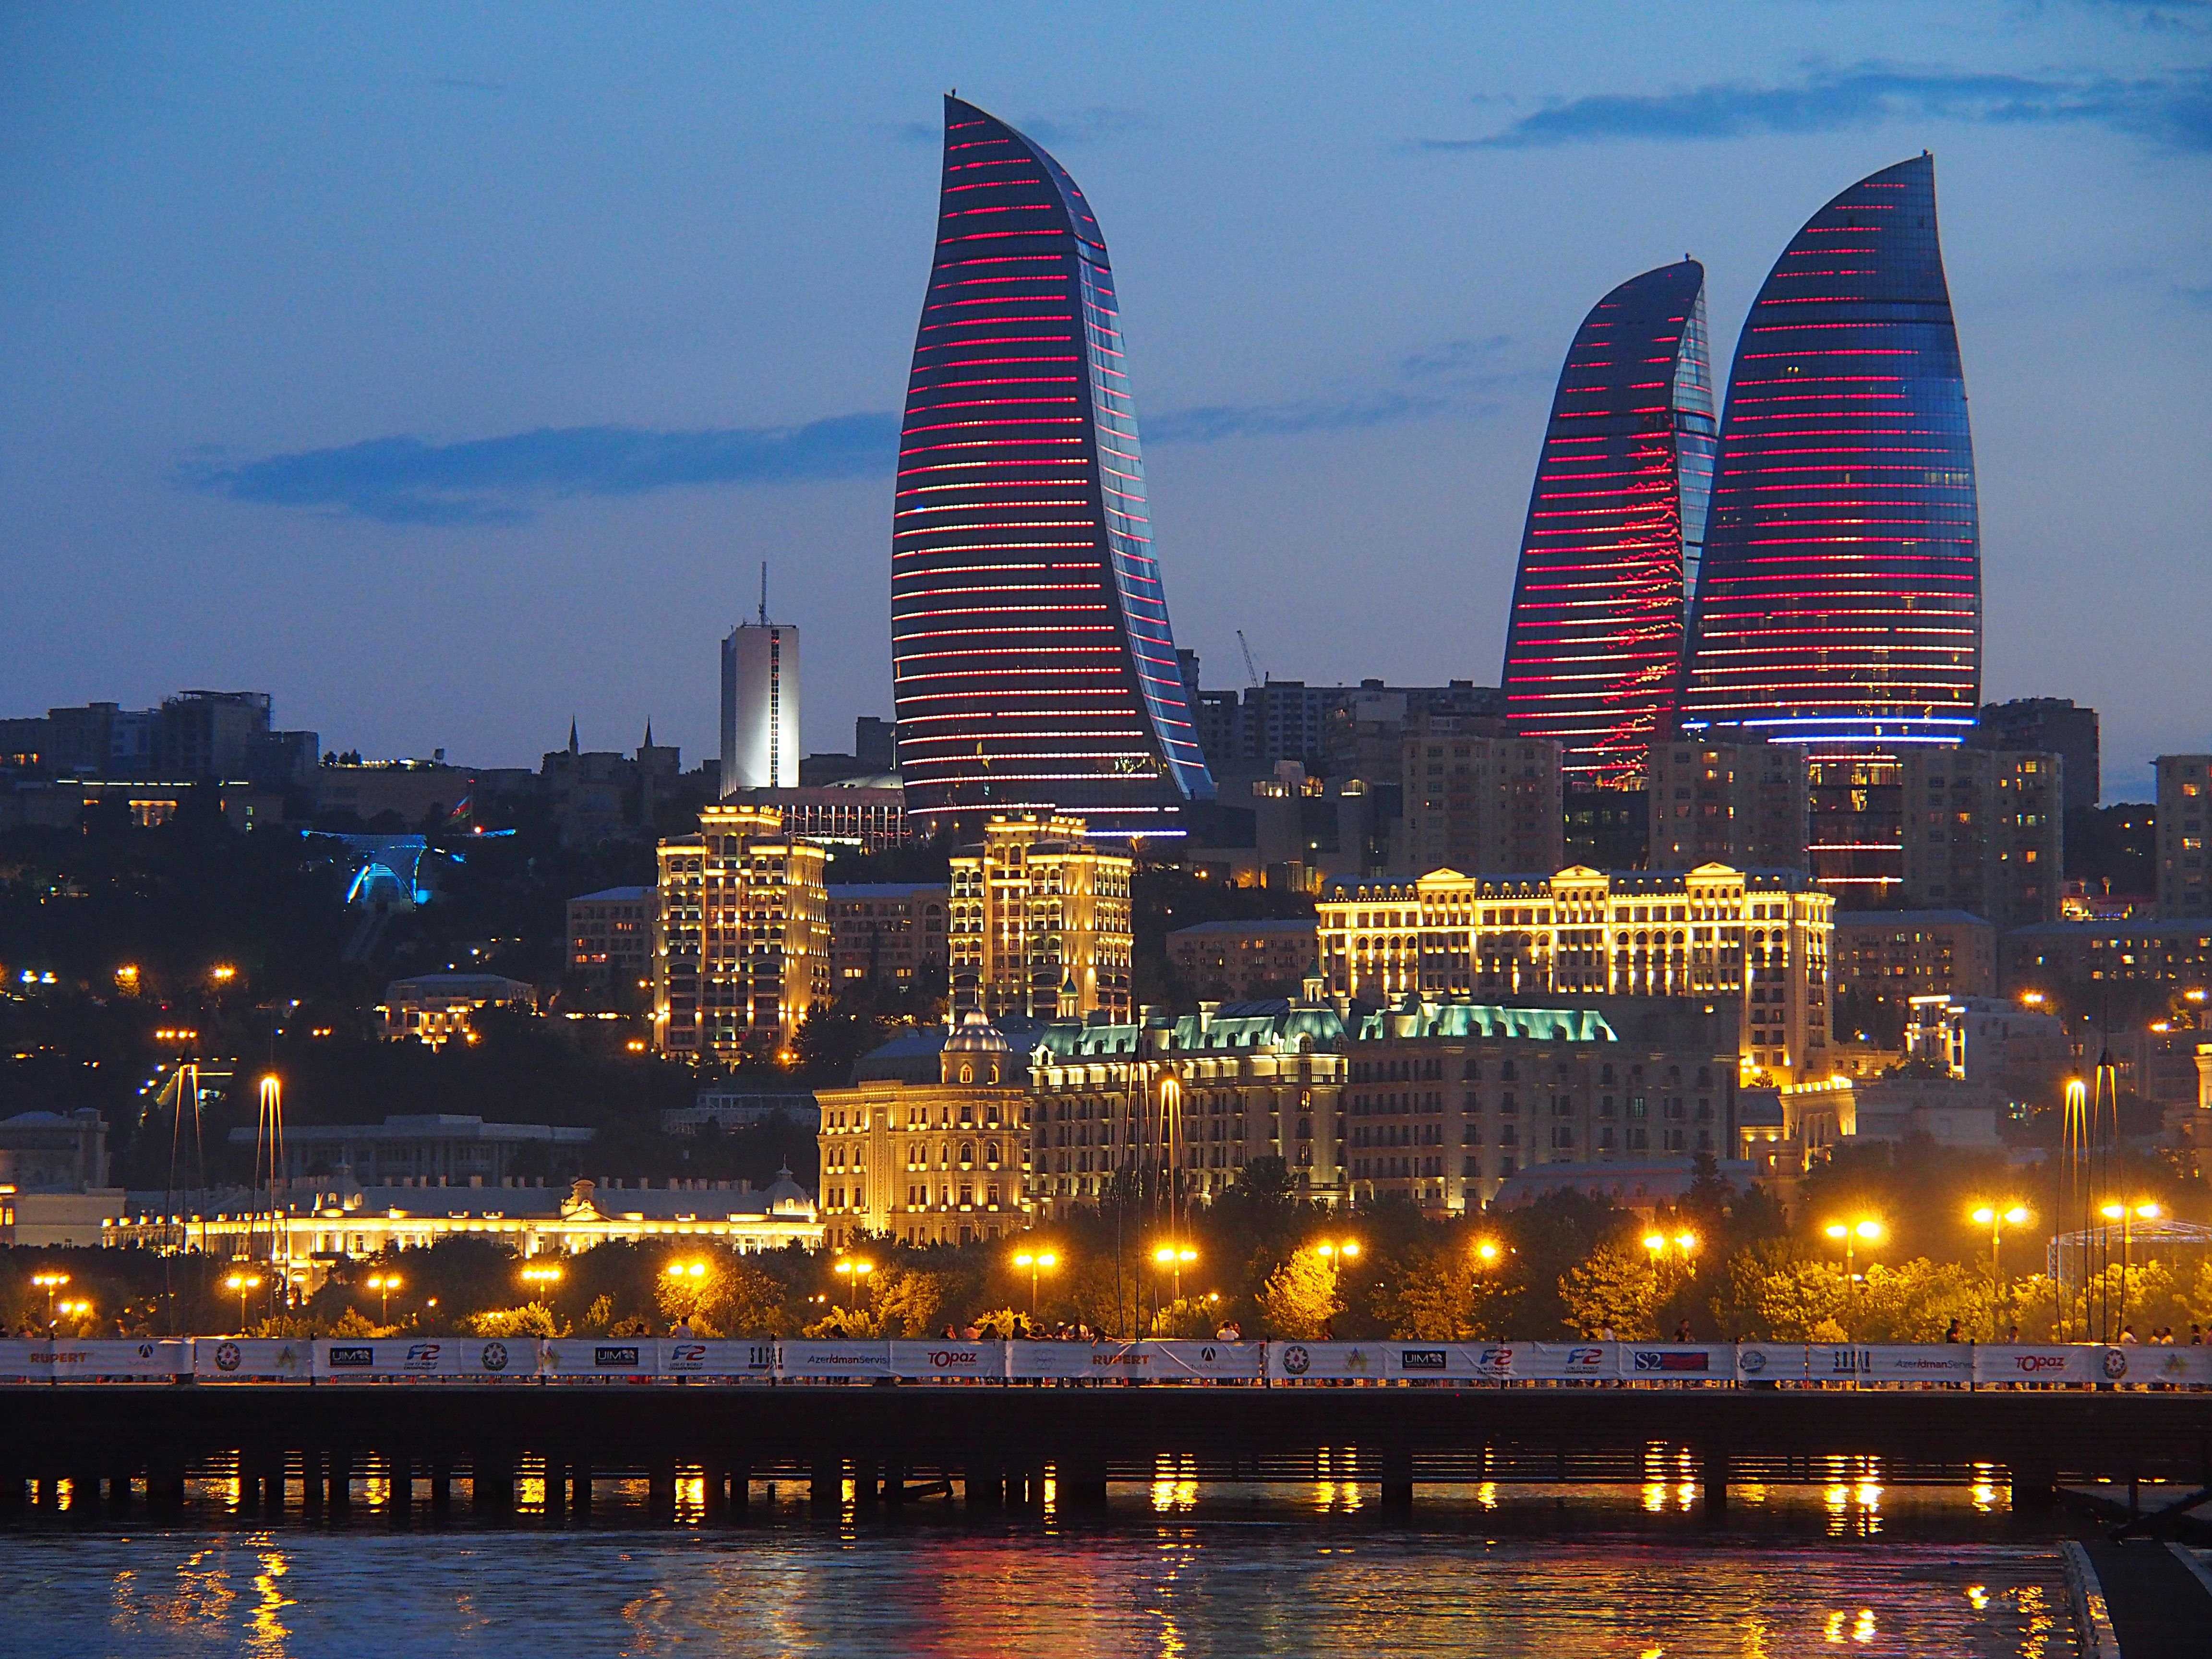 Город Гянджа считается культурной столицей Азербайджана Он древний, красивый и колоритный Приезжайте сюда, чтобы насладиться необыкновенной атмосферой, увидеть все главные достопримечательности и отведать традиционные азербайджанские блюда